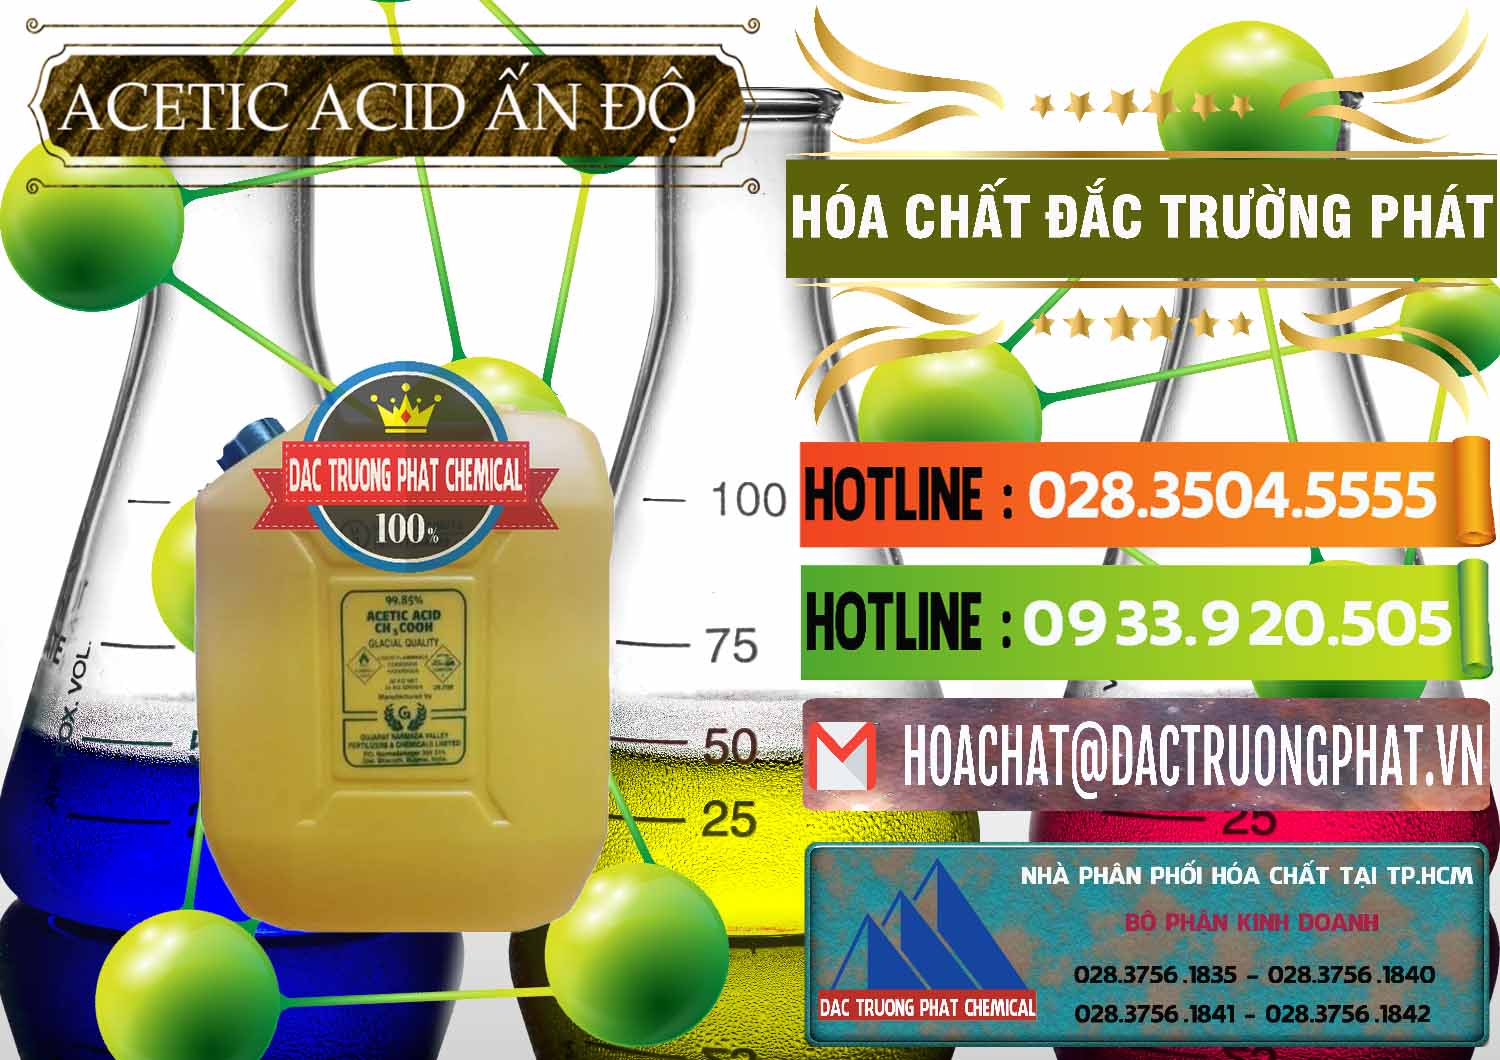 Nơi chuyên cung cấp và bán Acetic Acid – Axit Acetic Ấn Độ India - 0359 - Đơn vị bán ( phân phối ) hóa chất tại TP.HCM - cungcaphoachat.com.vn